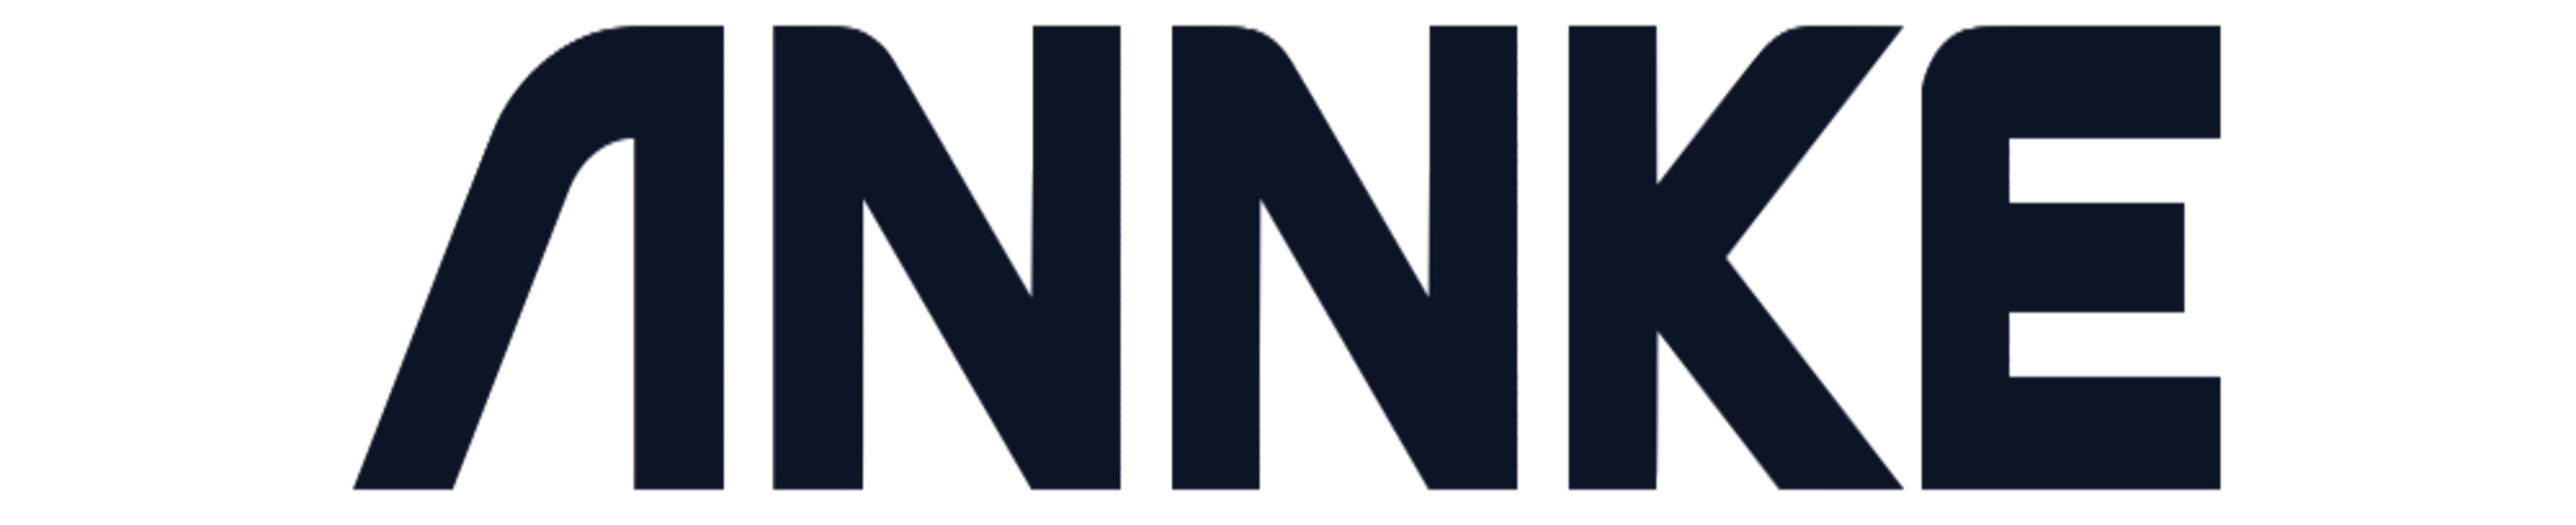 Annke logo